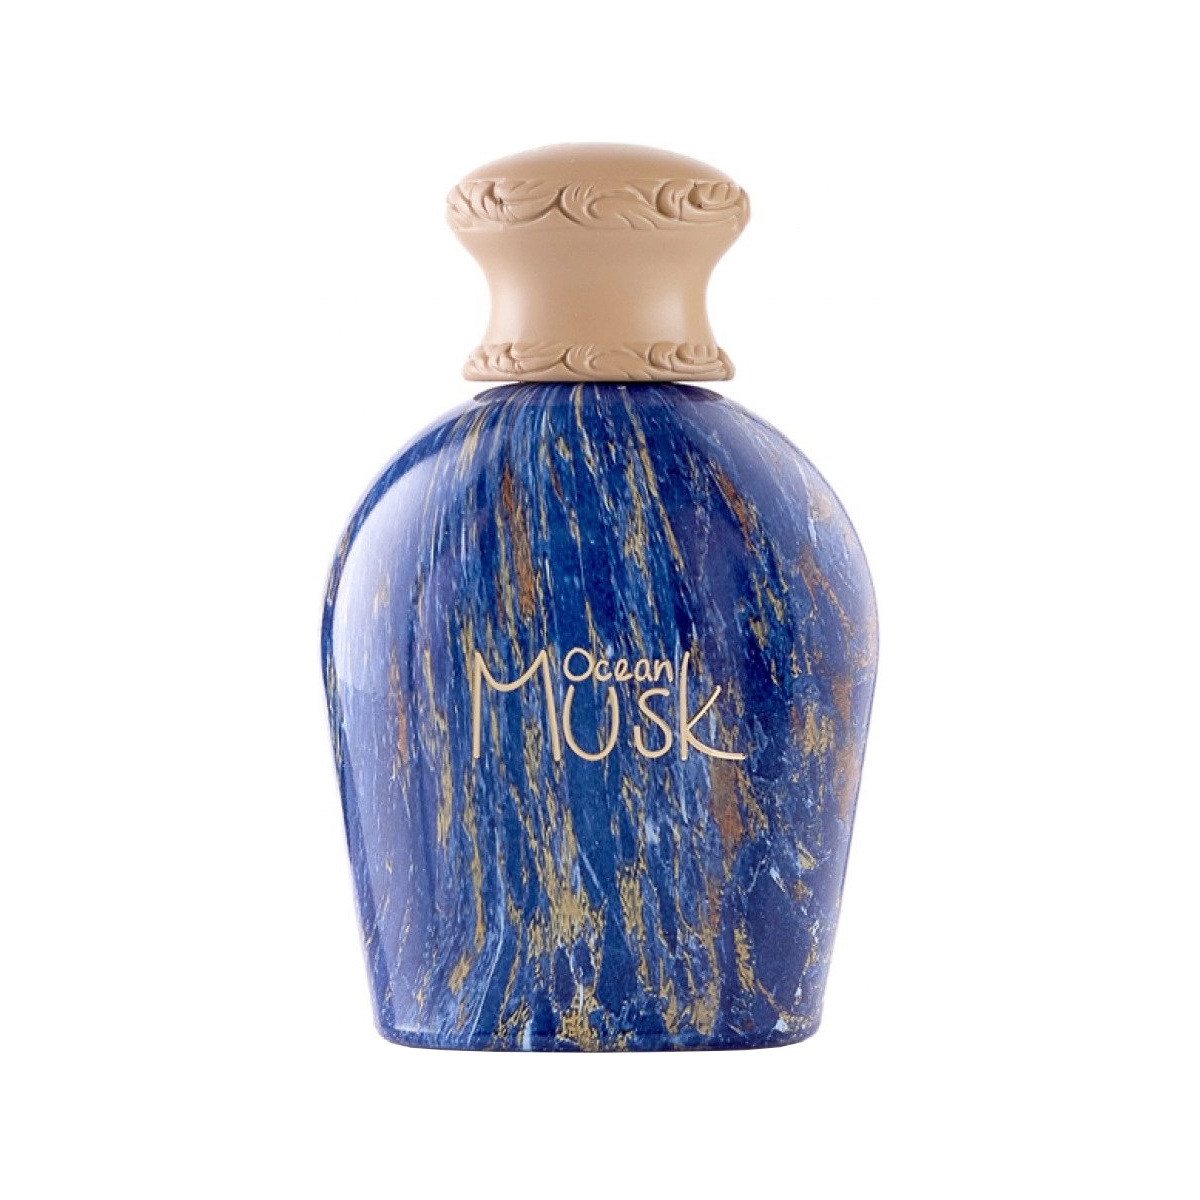 Ocean Musk Junaid Perfumes Perfumes, Unisex Perfumes, Arada Perfumes